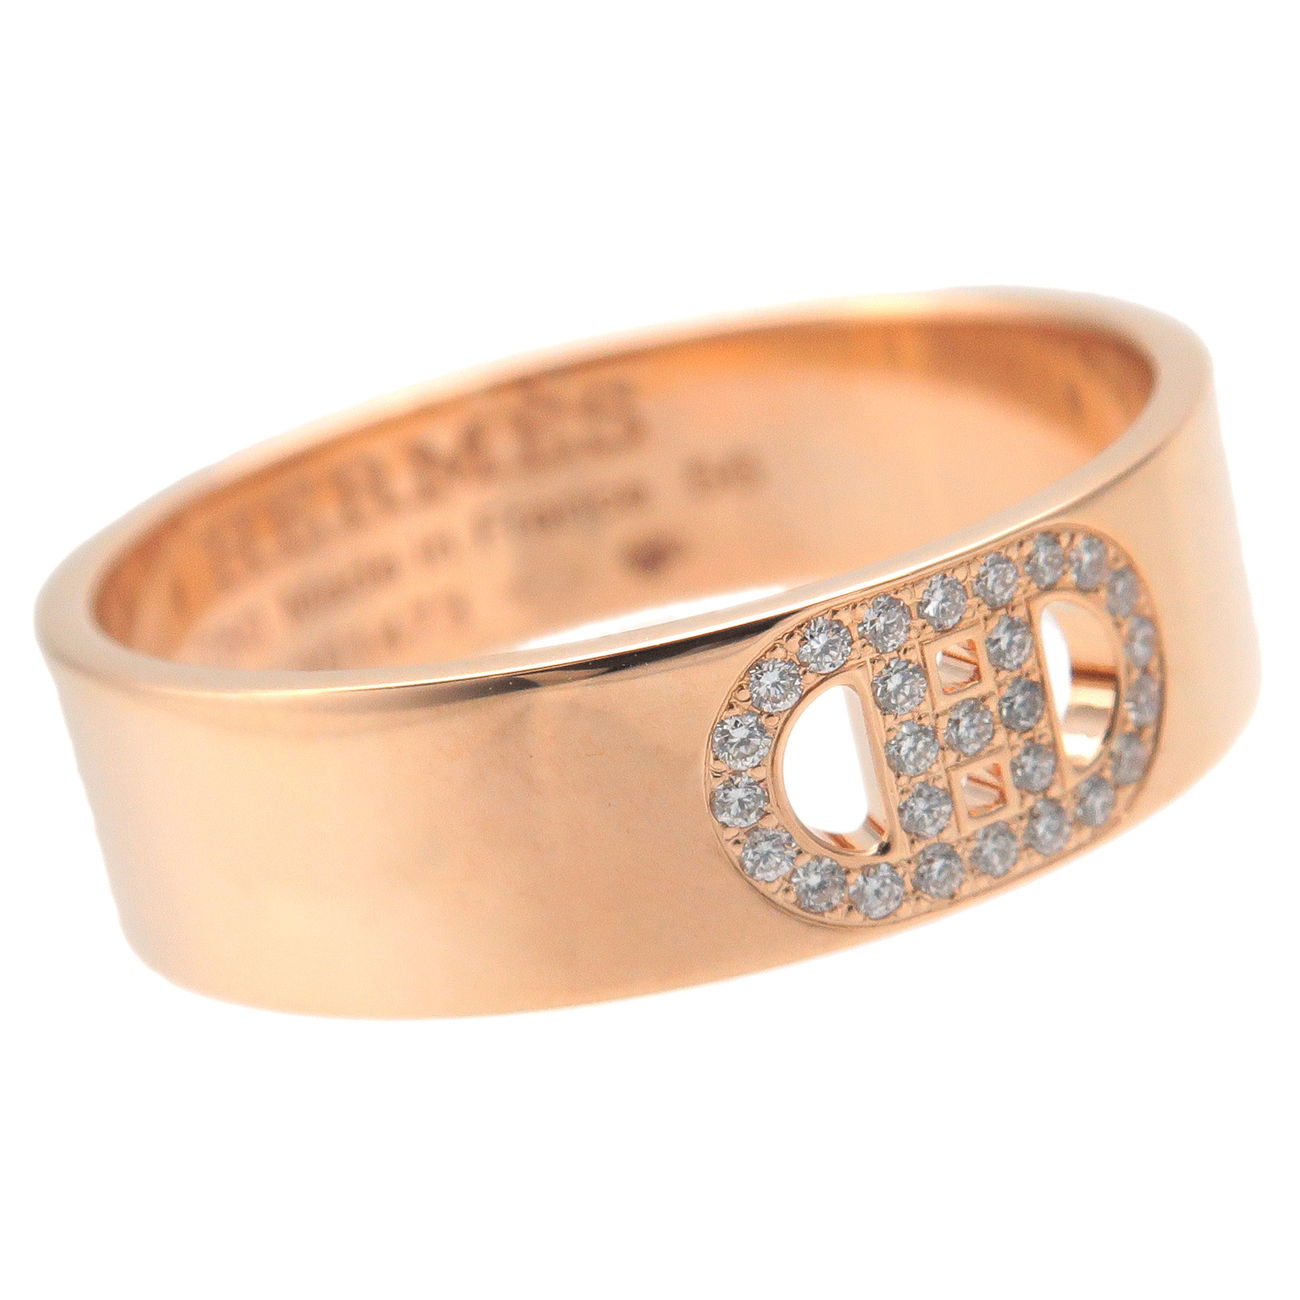 Hermes H Dunkle Diamond Ring PM K18PG Rose Gold #56 US7.5-8